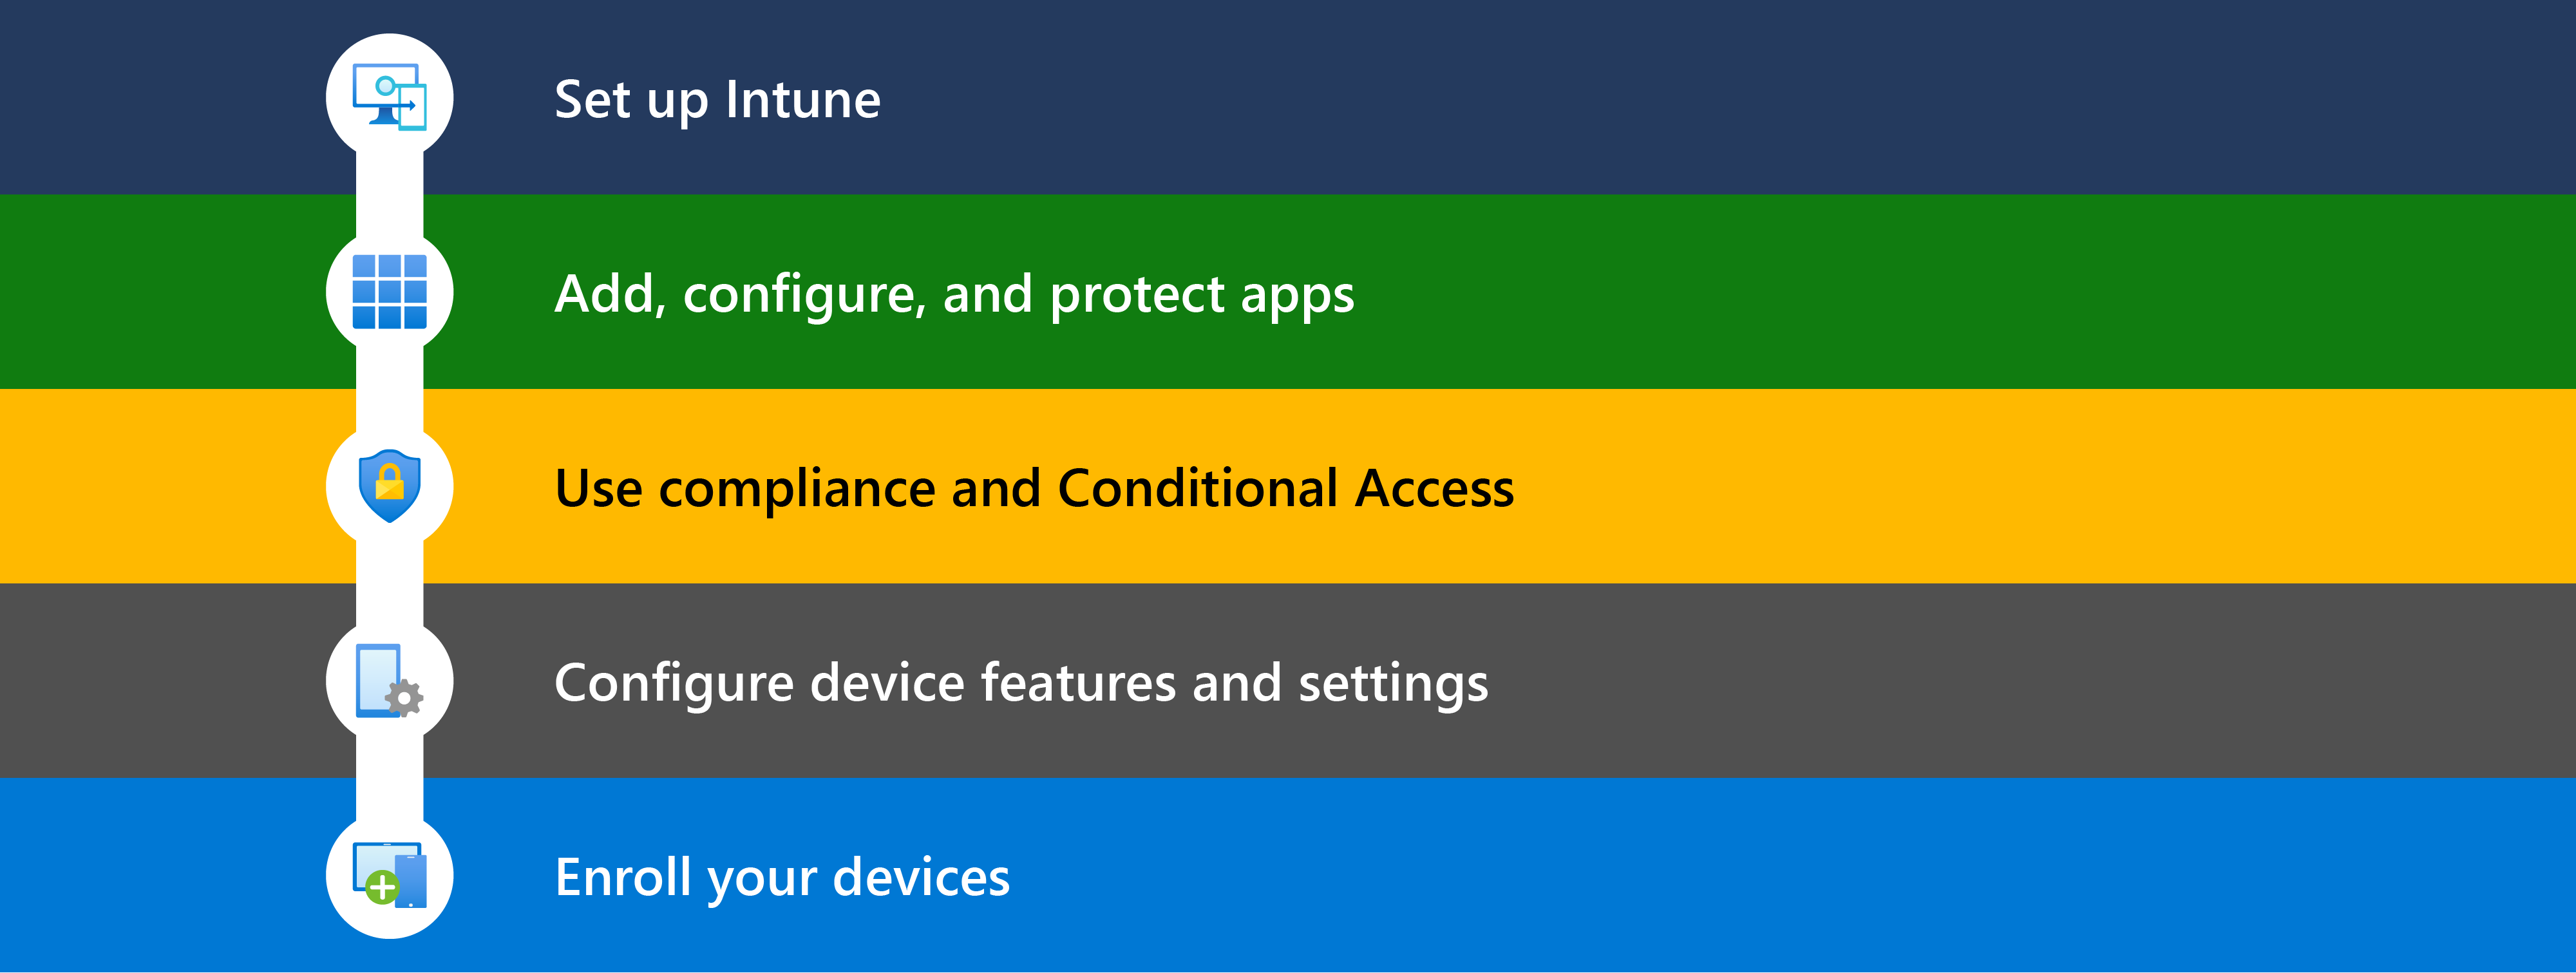 此圖顯示開始使用 Microsoft Intune的不同步驟，包括設定、新增應用程式、使用合規性 & 條件式存取、設定裝置功能，然後註冊要管理的裝置。